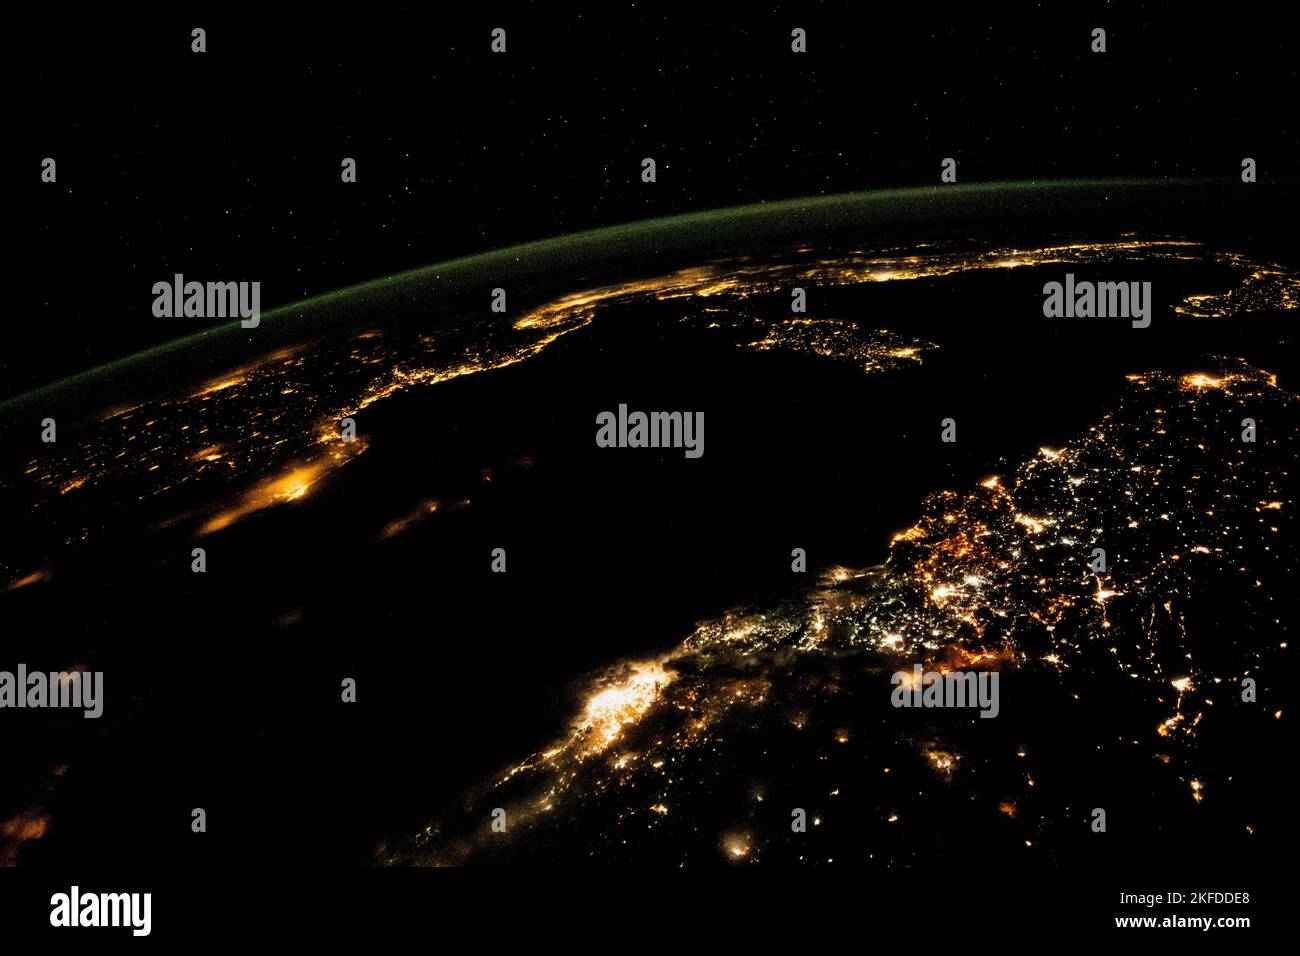 Luftaufnahme, Städte beleuchten die Nachtansicht aus dem Weltraum. Mittelmeer von Nordafrika bis Südeuropa. Bildelemente, die von der NASA eingerichtet wurden. Stockfoto